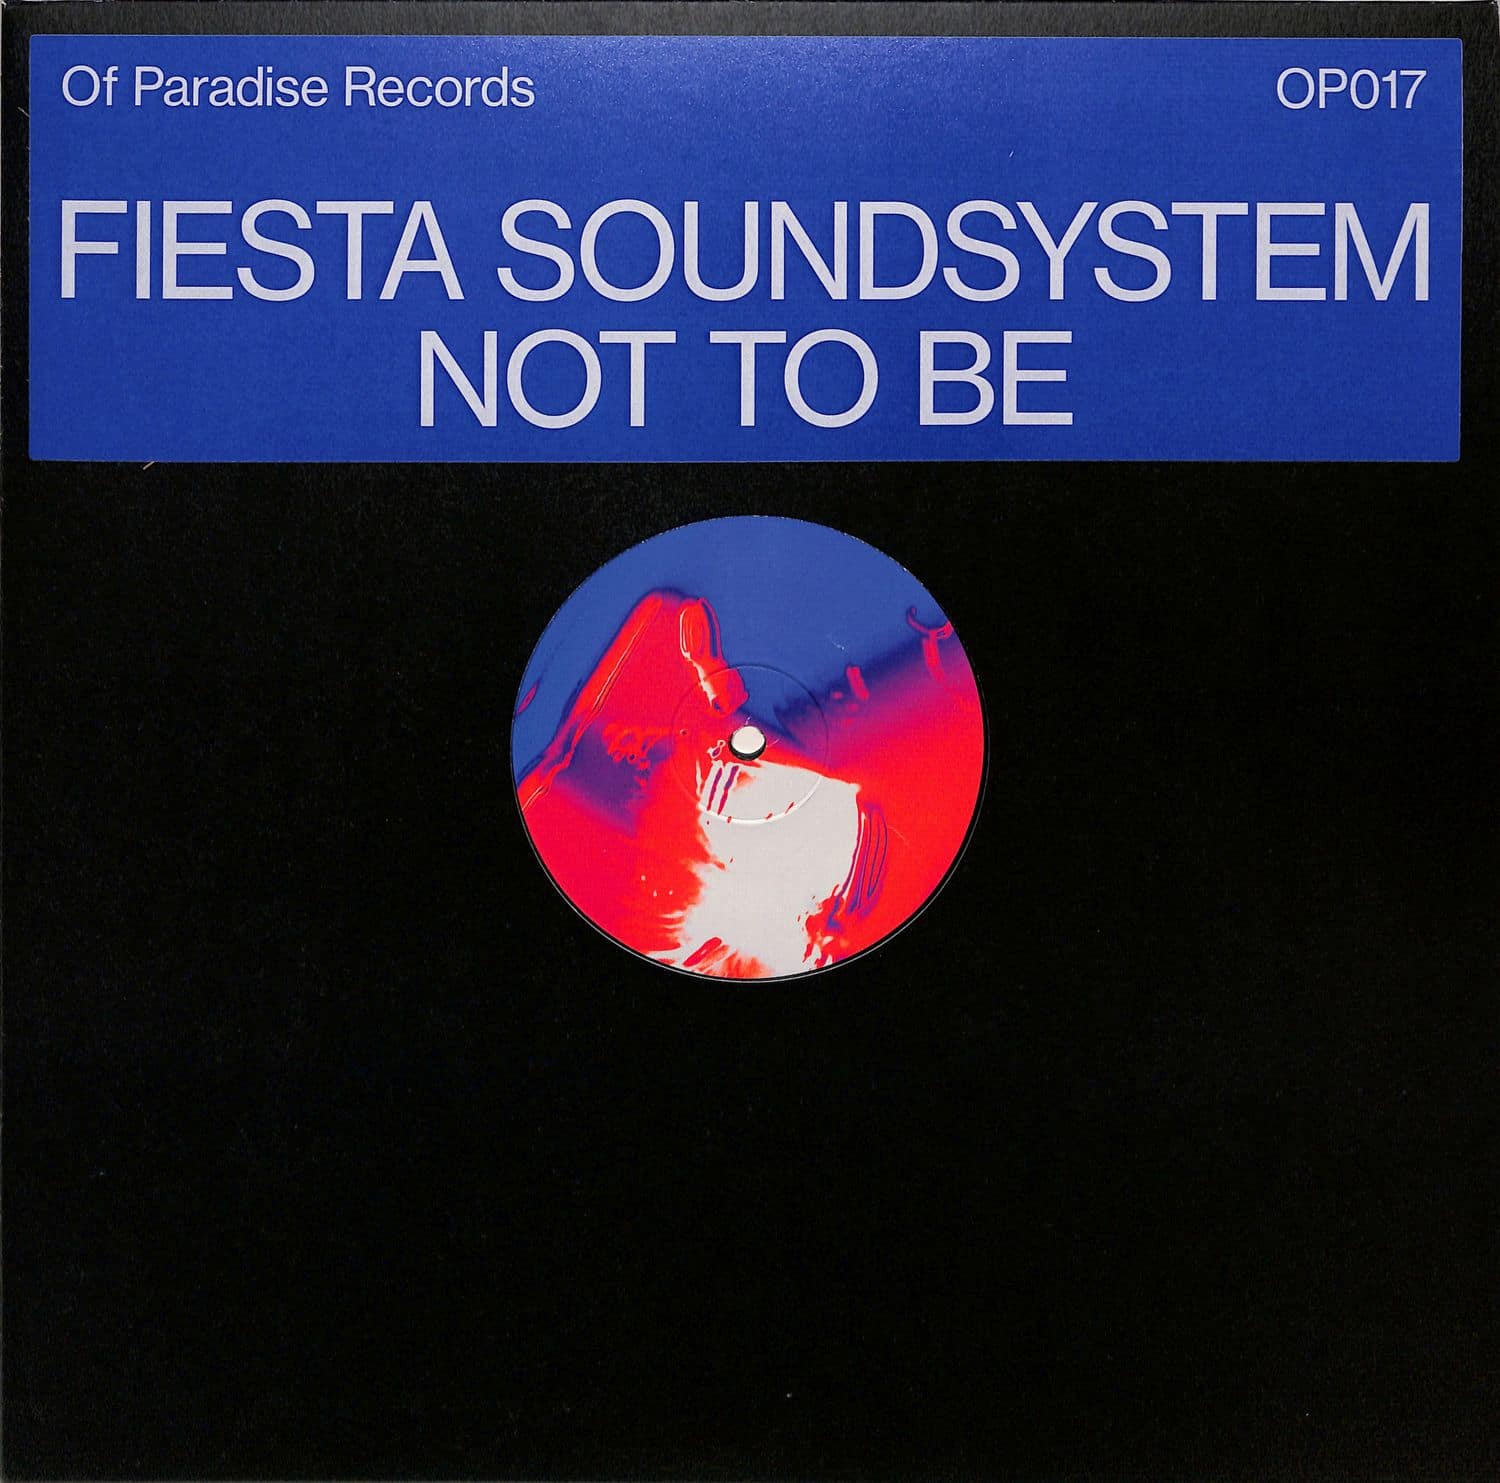 Fiesta Soundsystem - NOT TO BE